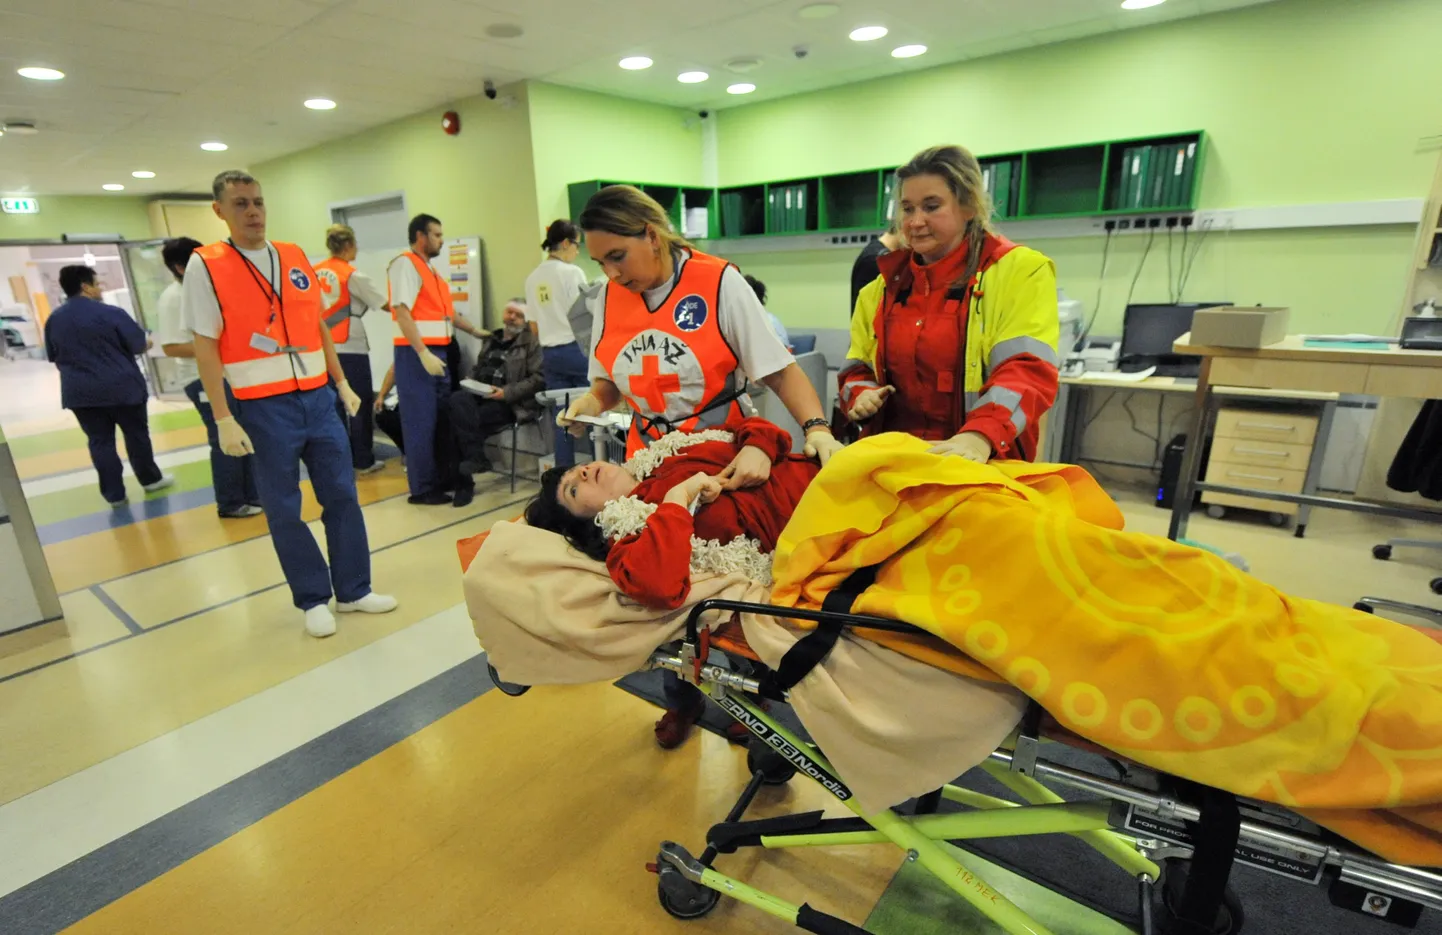 Põhja-Eesti regionaalhaigla erakorralise meditsiini keskus korraldas eile kriisiõppuse, kontrollimaks valmisolekut suurõnnetuse korral.